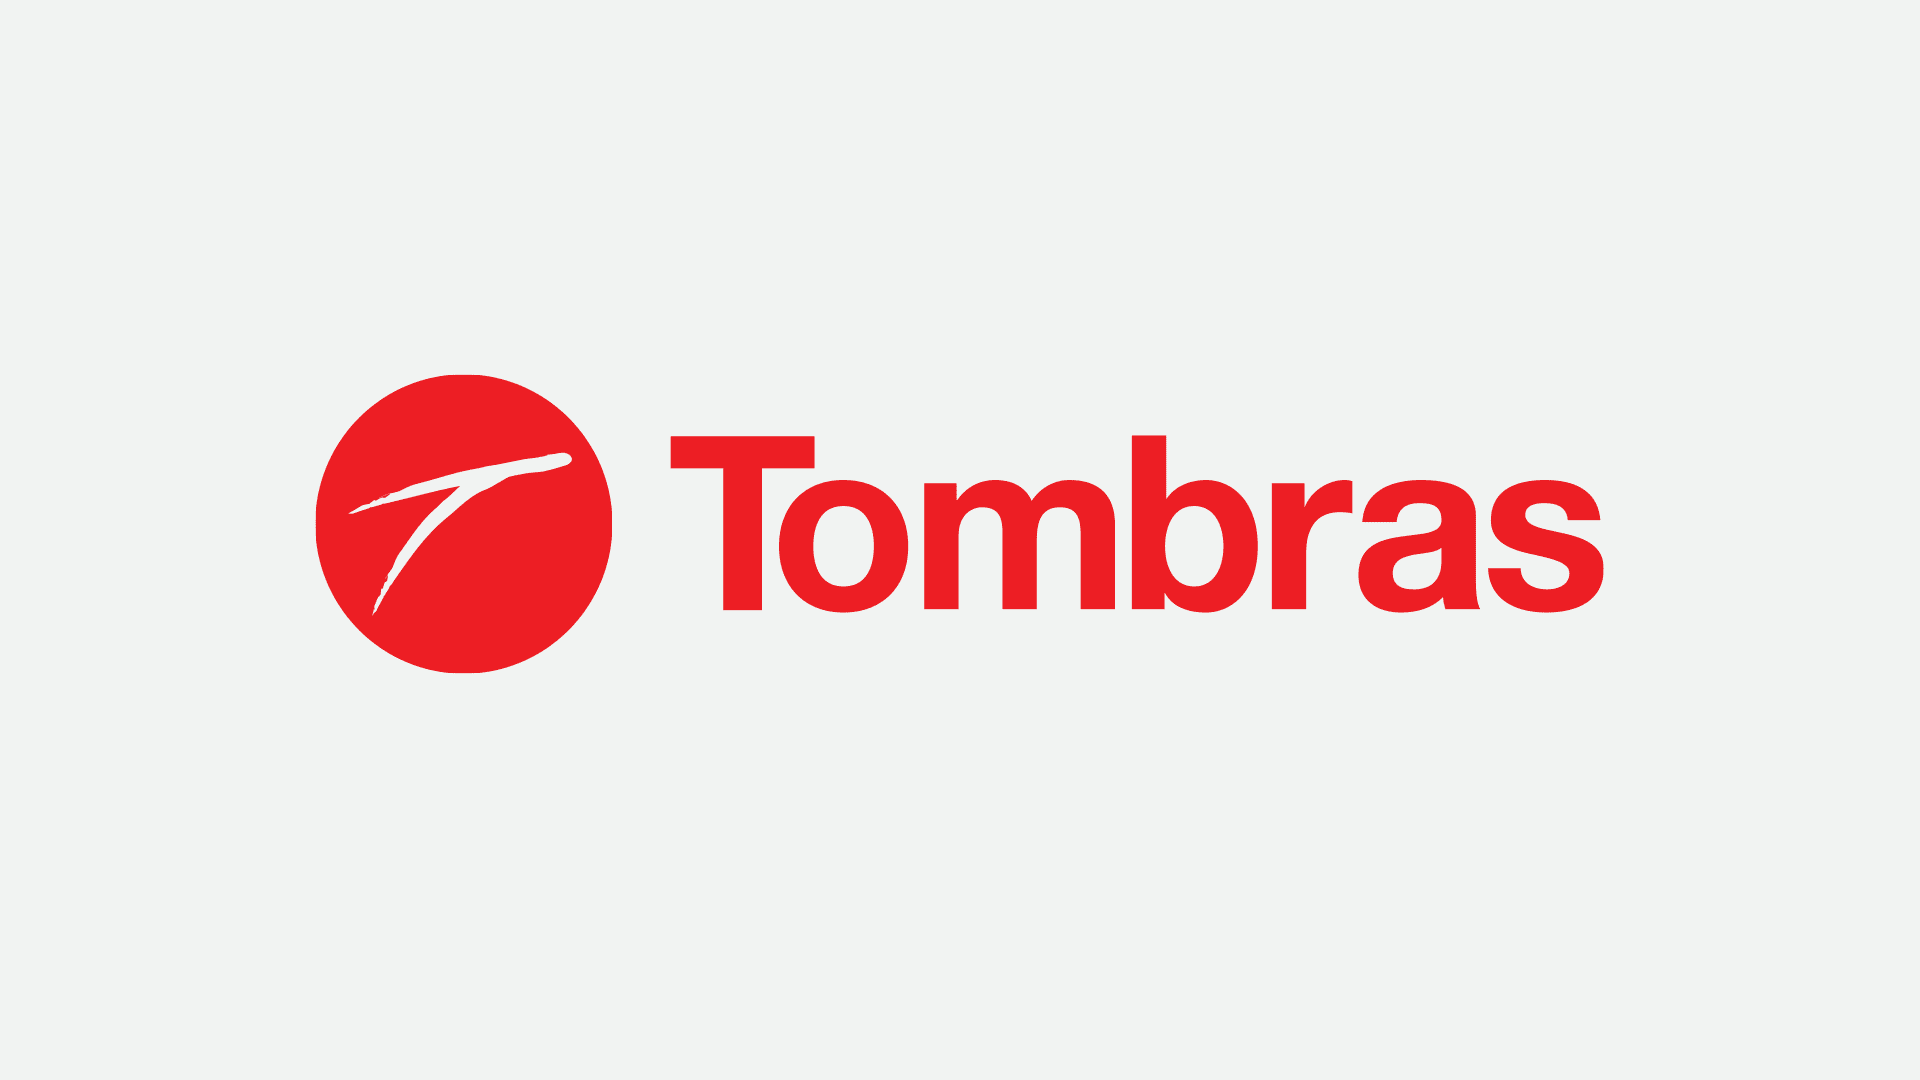 (c) Tombras.com